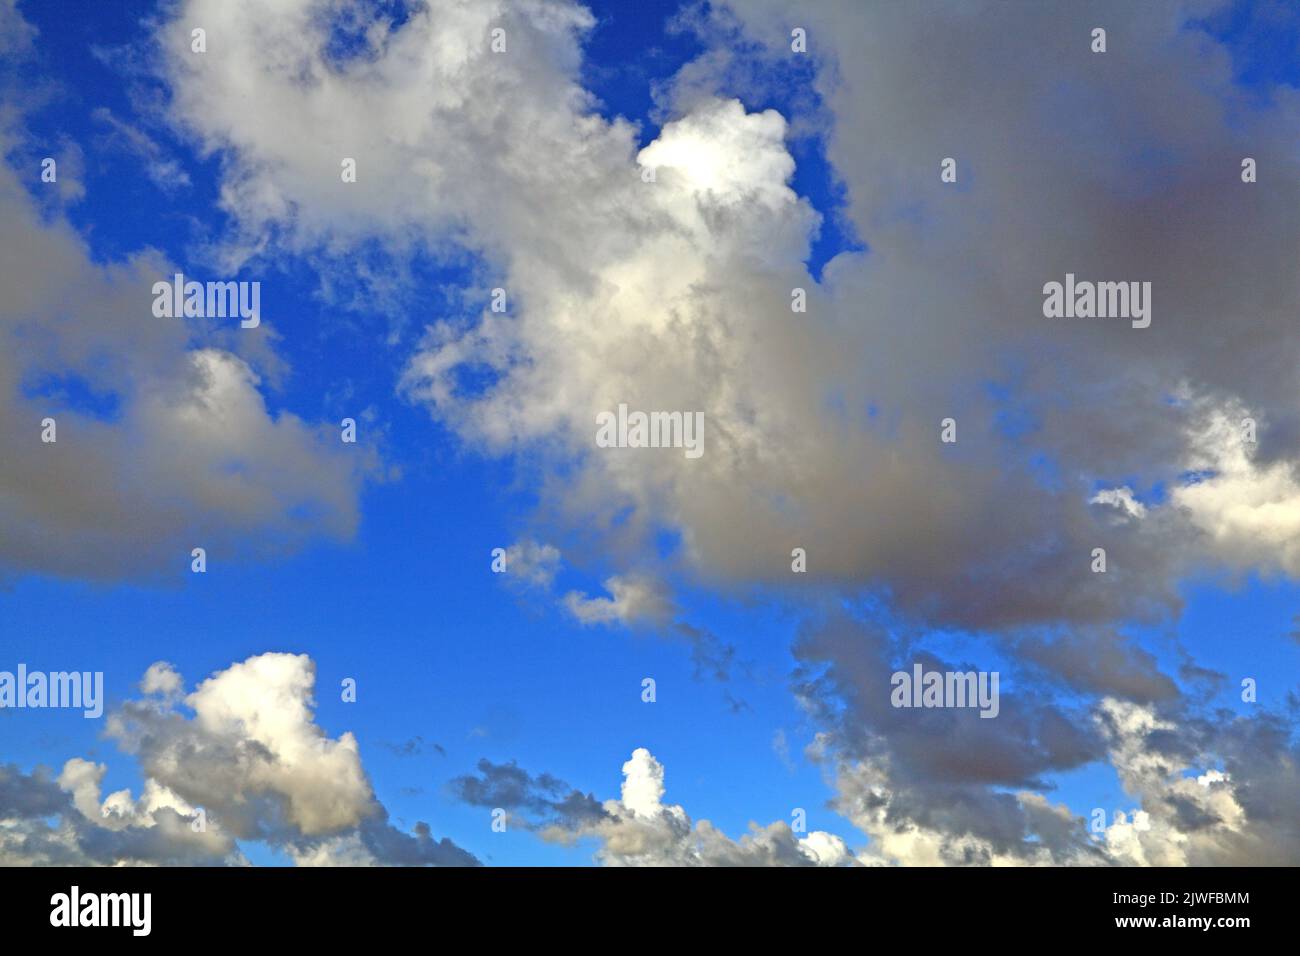 Weiß, grau, dunkel, Cumuluswolke, Wolken, Blauer Himmel, Himmel, Wetter, Meteorologie, England, VEREINIGTES KÖNIGREICH Stockfoto